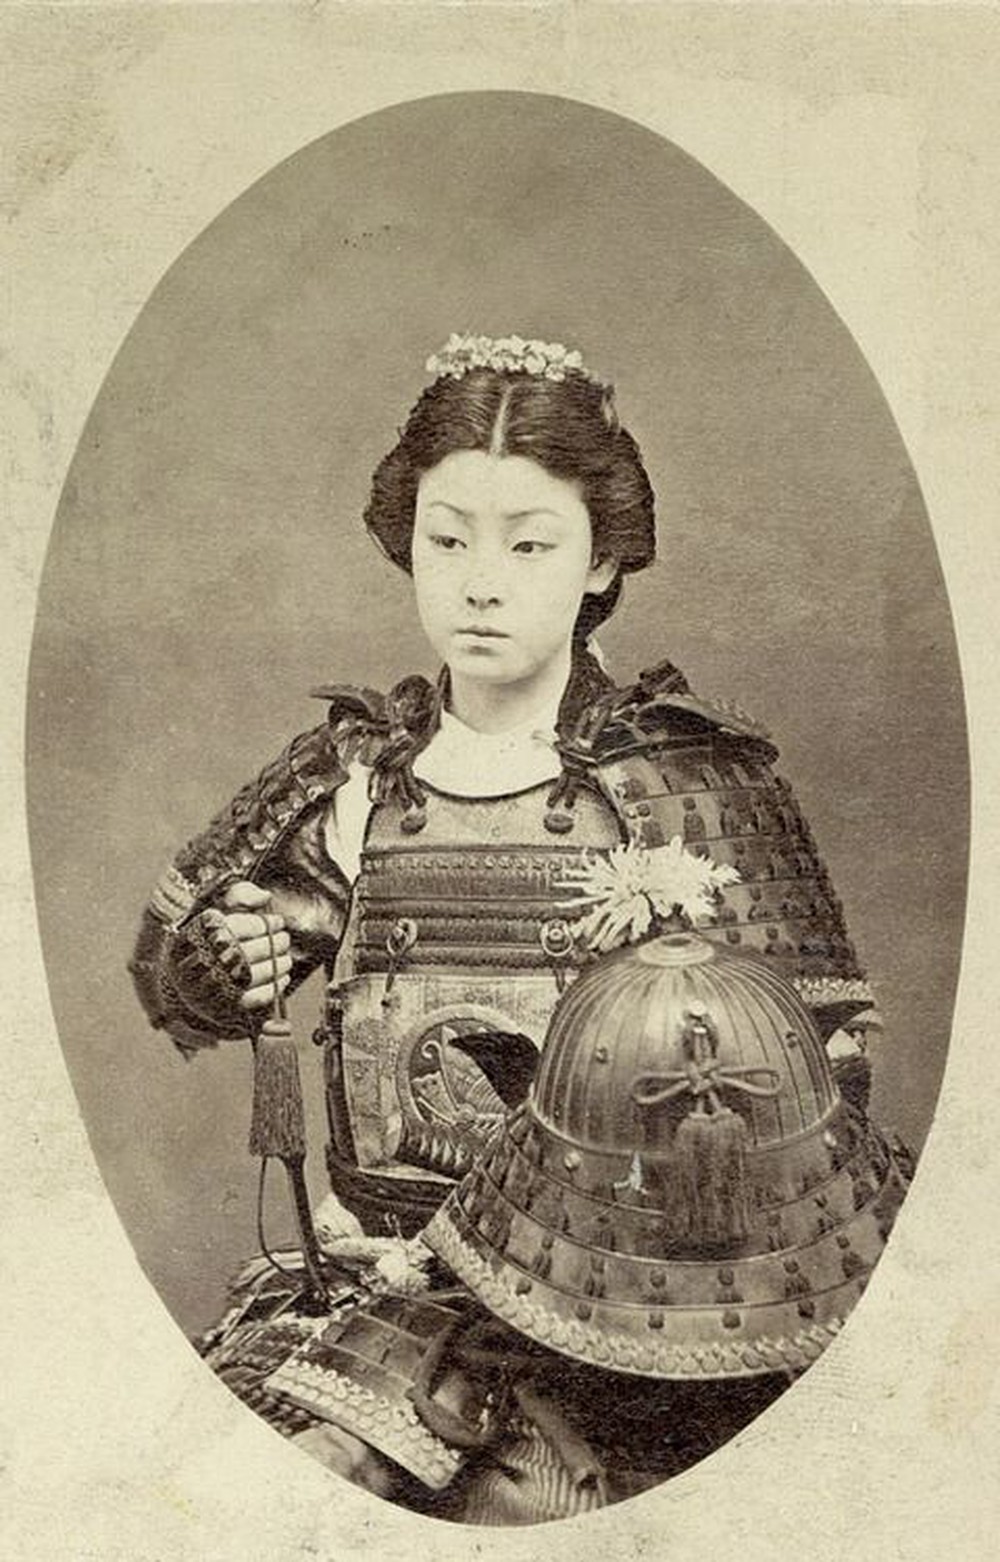 Loạt ảnh hiếm khoe trọn dung mạo cuốn hút lạ thường của các nữ samurai thời xưa - ảnh 6